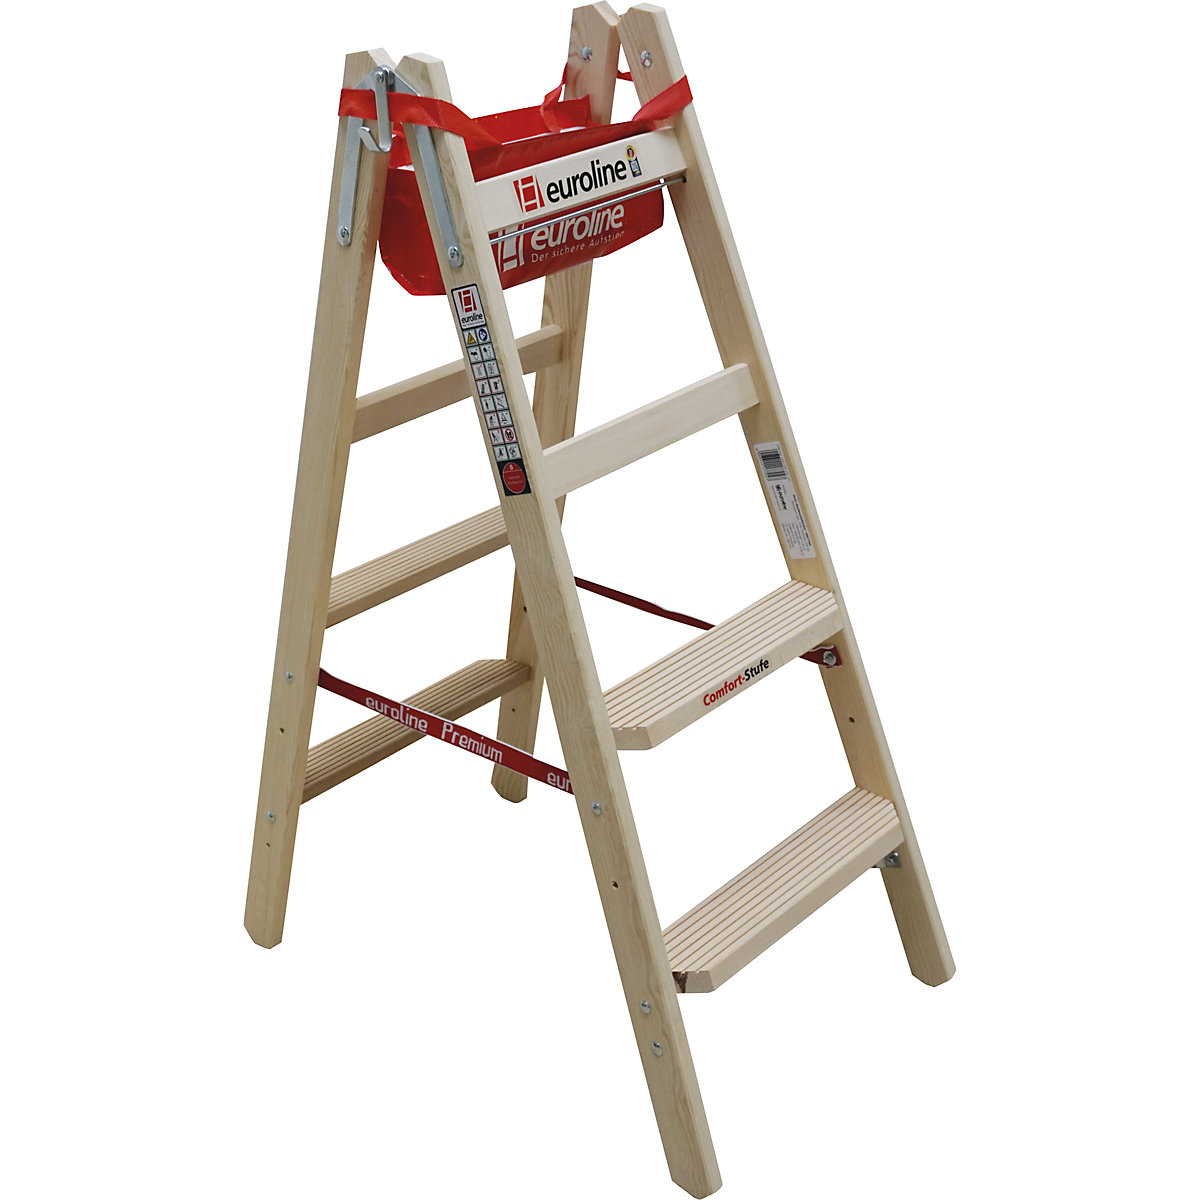 Wooden step ladder with comfort steps – euroline